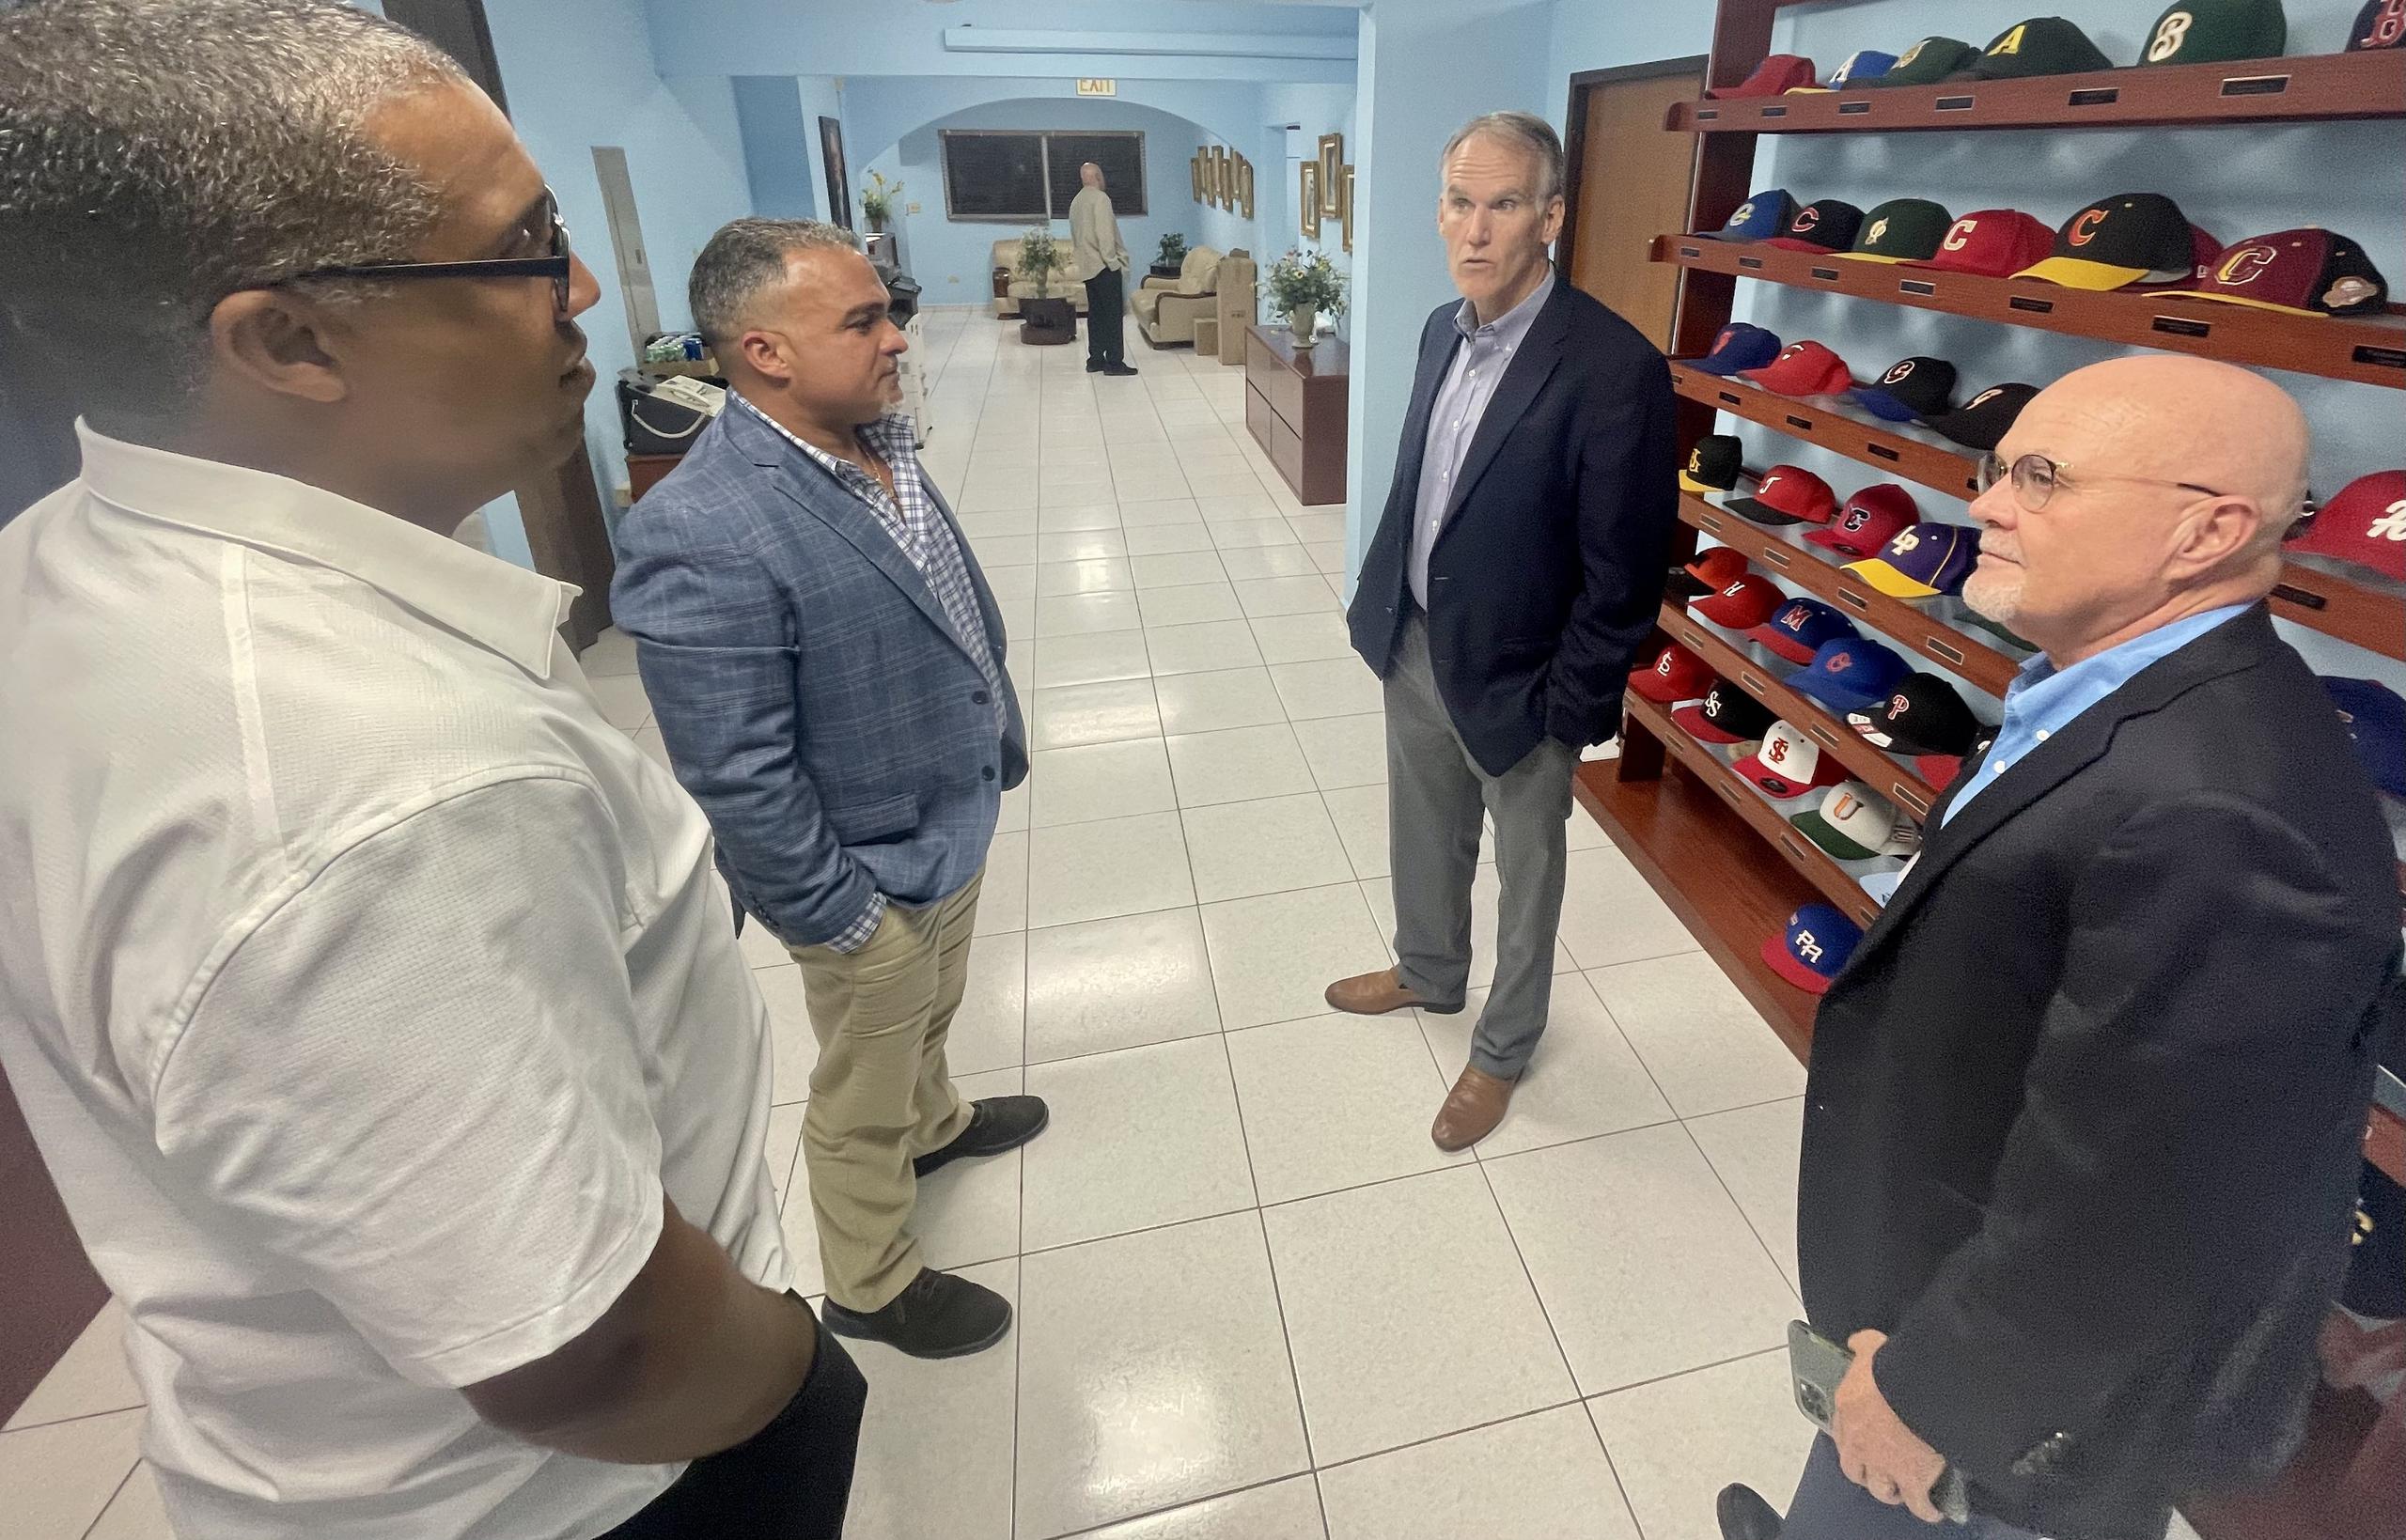 El gerente general del equipo de Puerto Rico, Eduardo Pérez, comparte junto al vicepresidente de la Federación de Béisbol, Carlos Príncipe, el ejecutivo de MLB, Jim Small, y el presidente de la Federación de Béisbol, Dr. José Quiles.